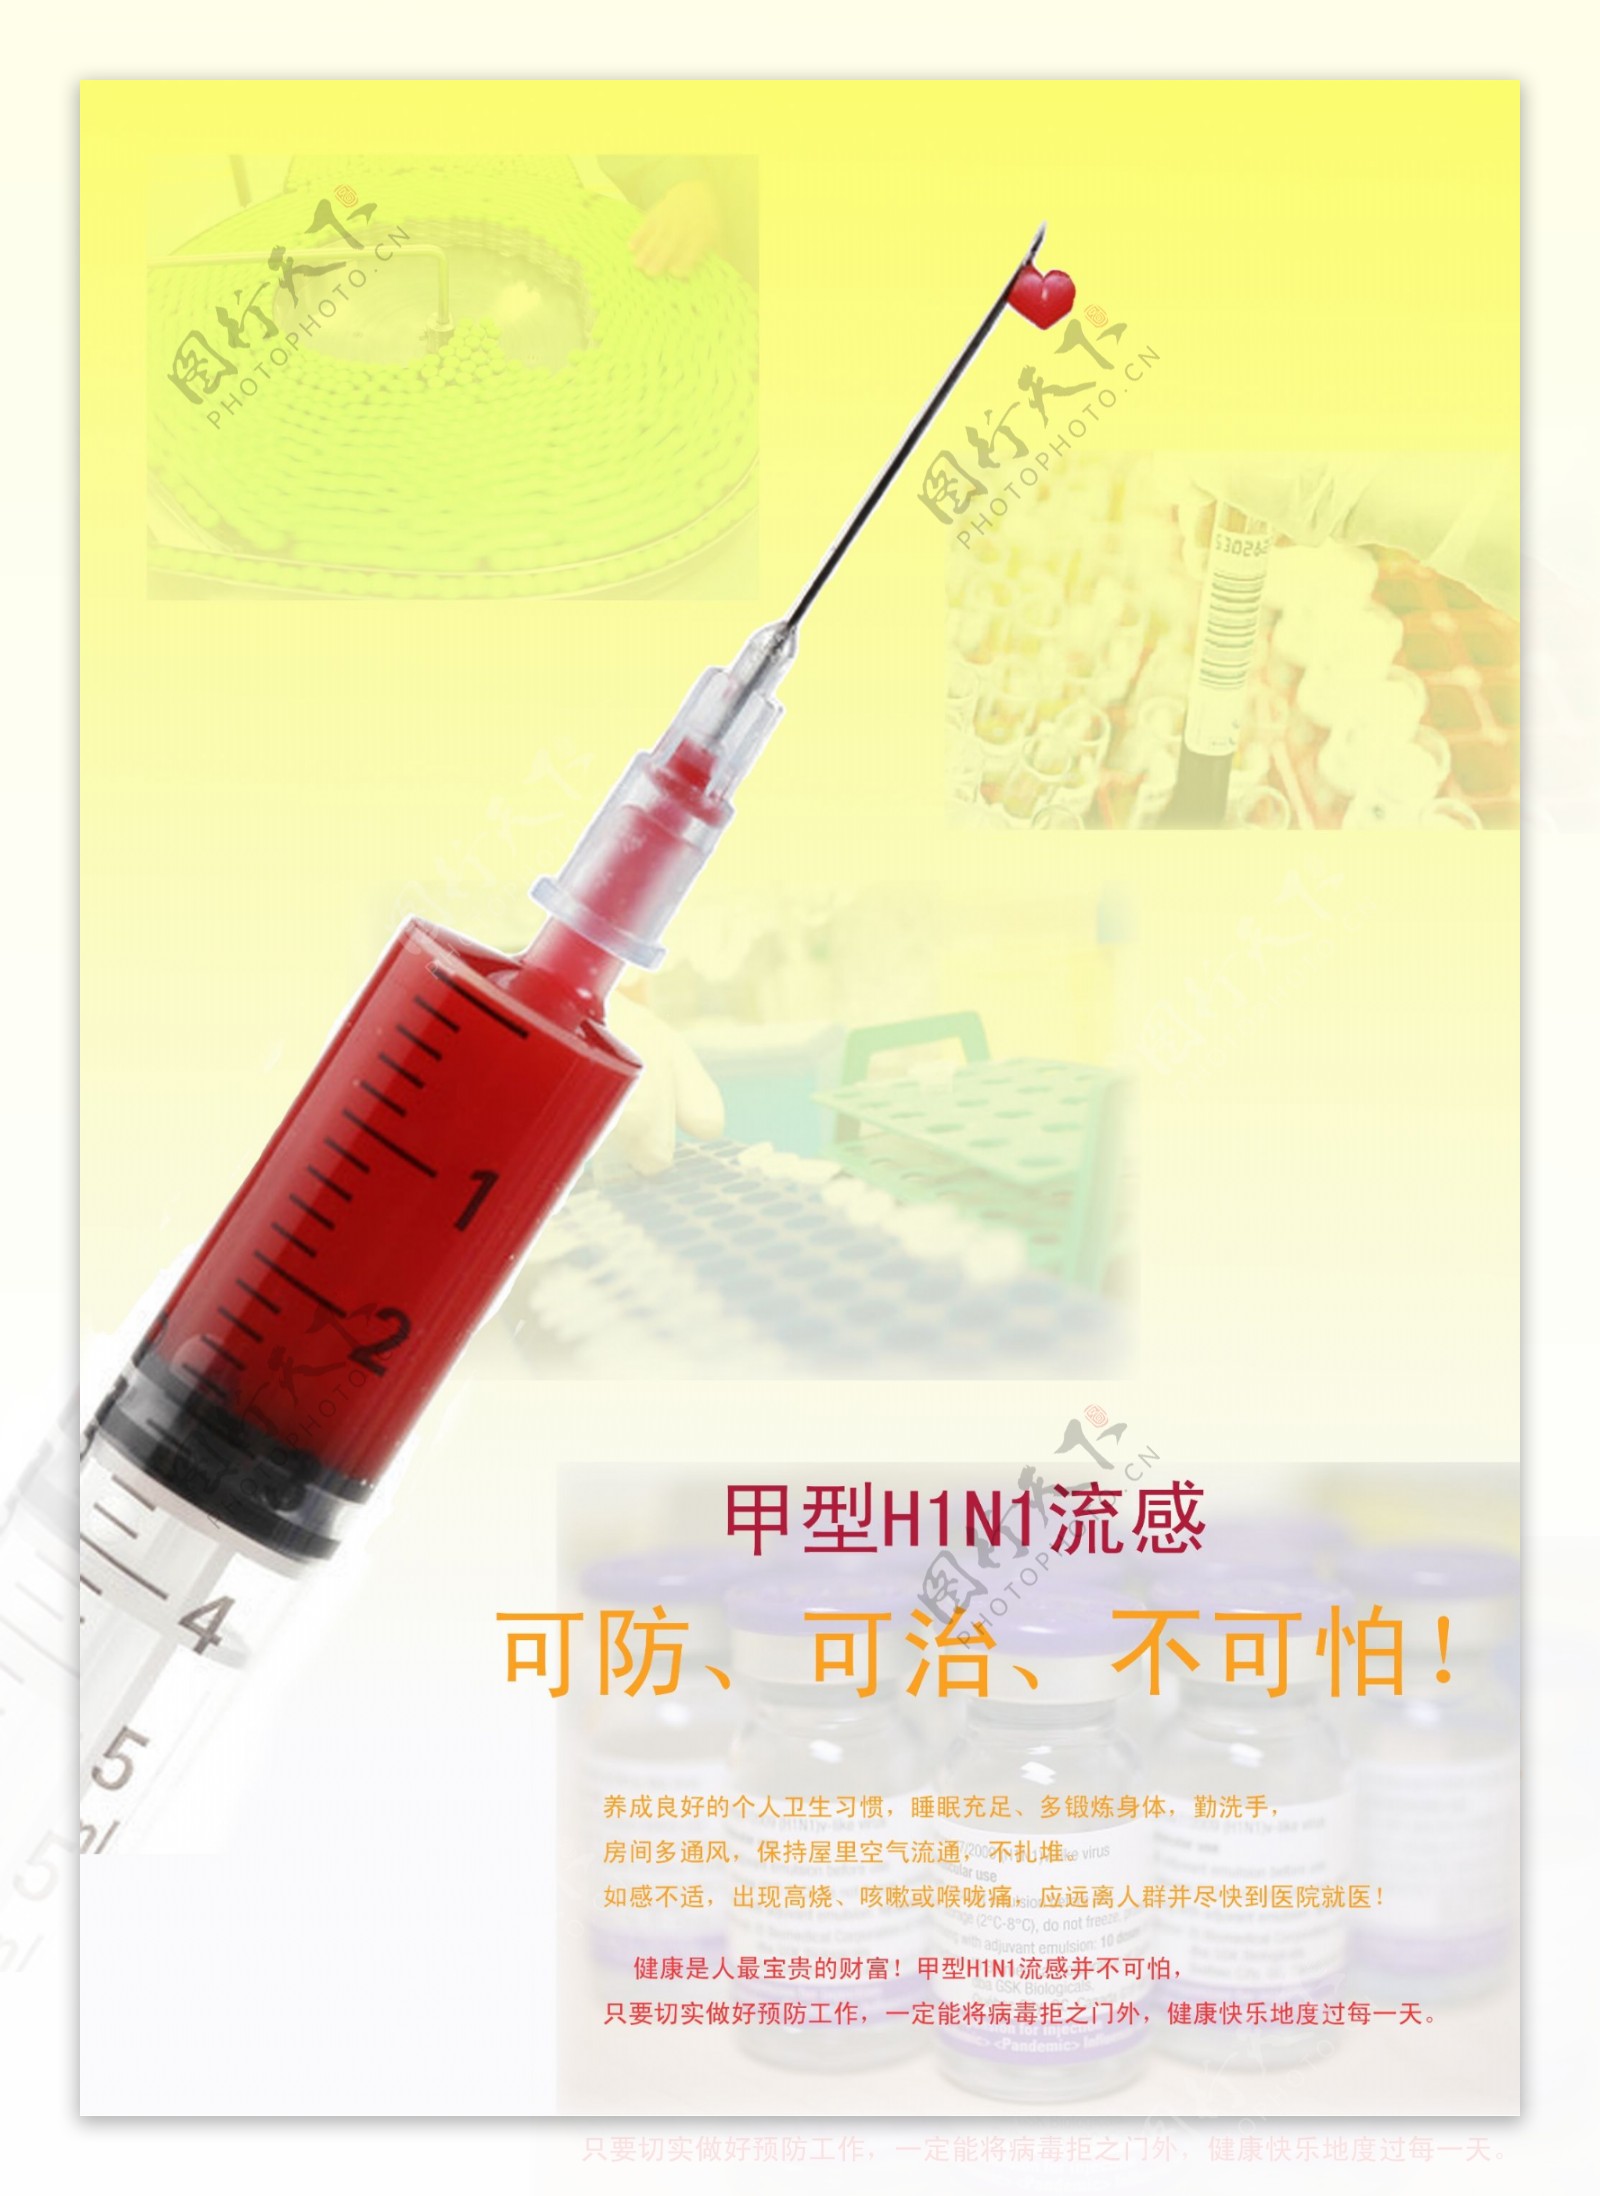 甲型h1ni流感公益广告图片